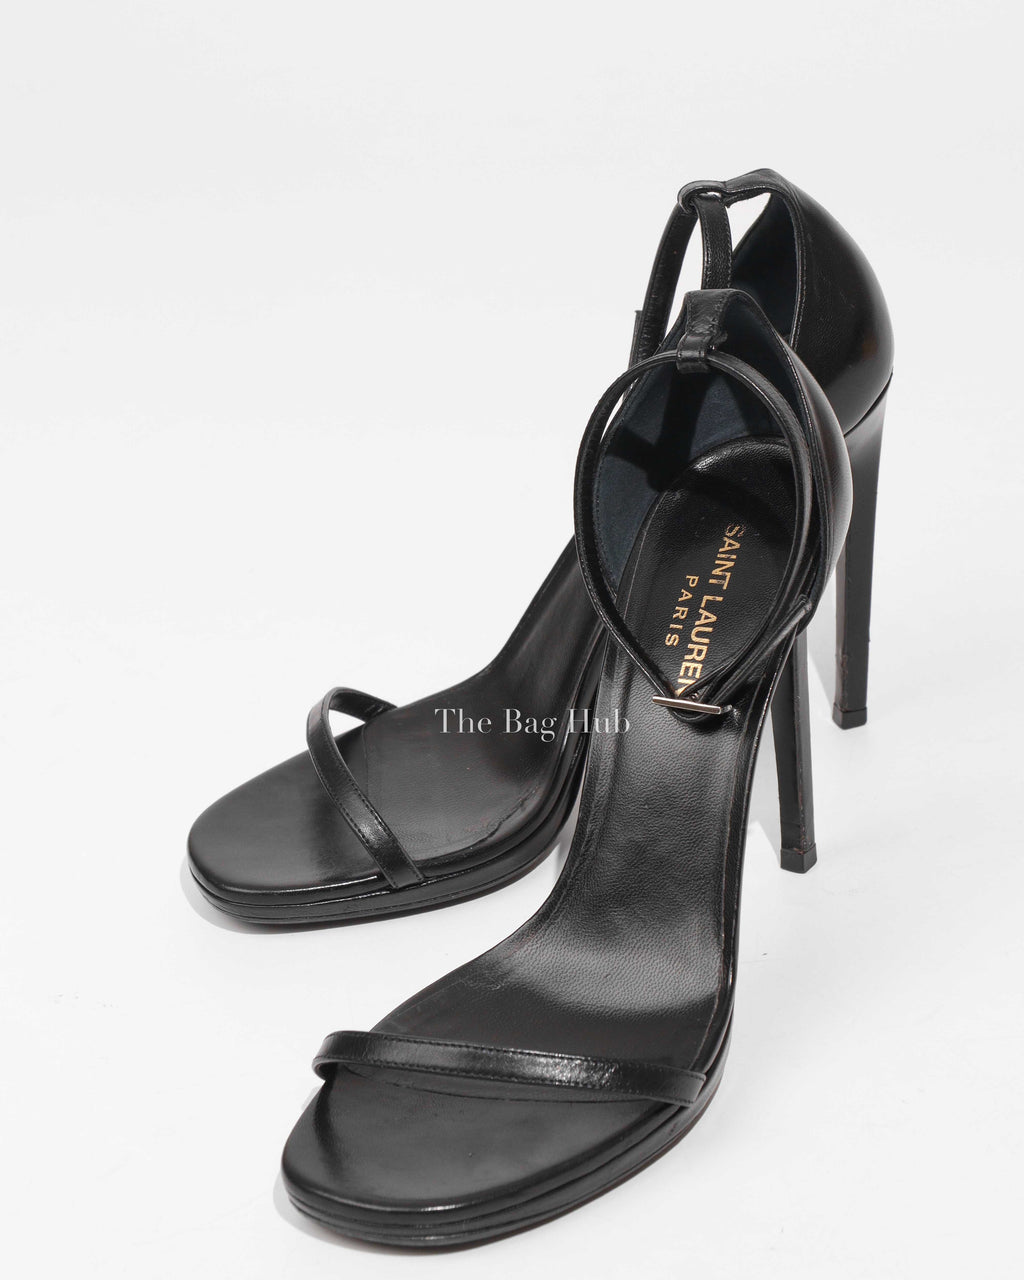 Saint Laurent Black Leather Jane Ankle Strap Sandals Size 39